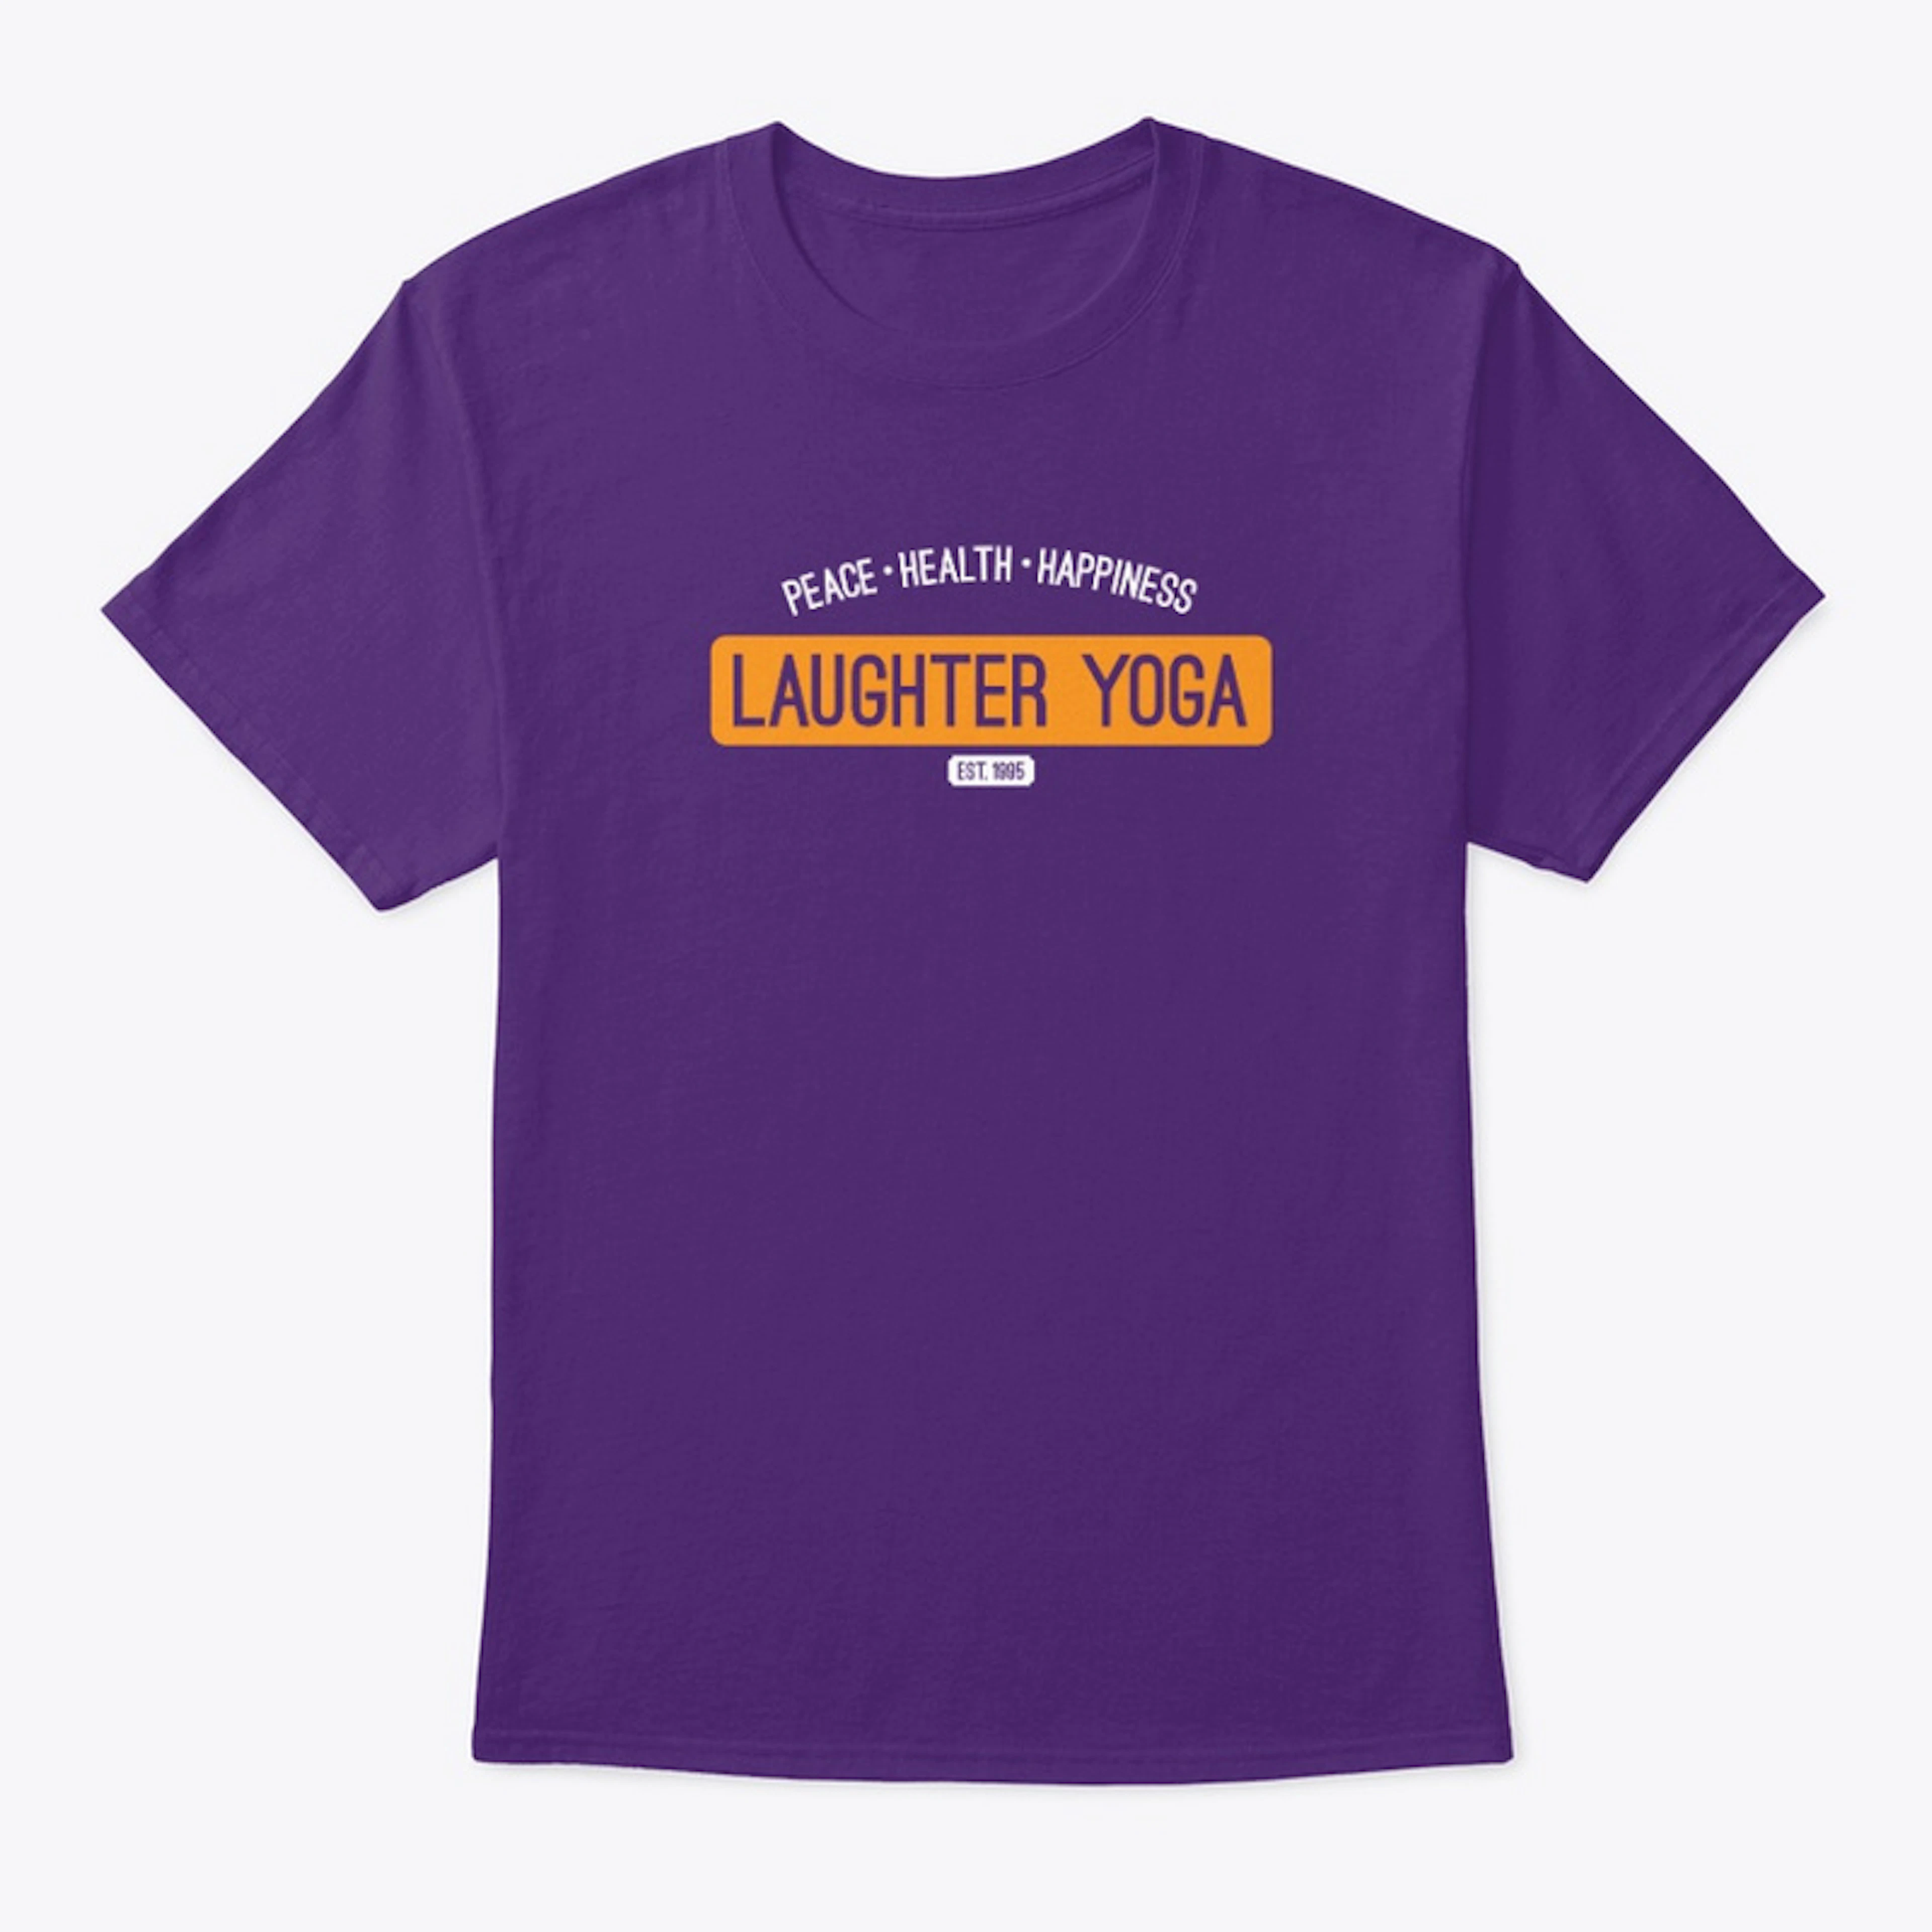 Laughter Yoga, Est. 1995